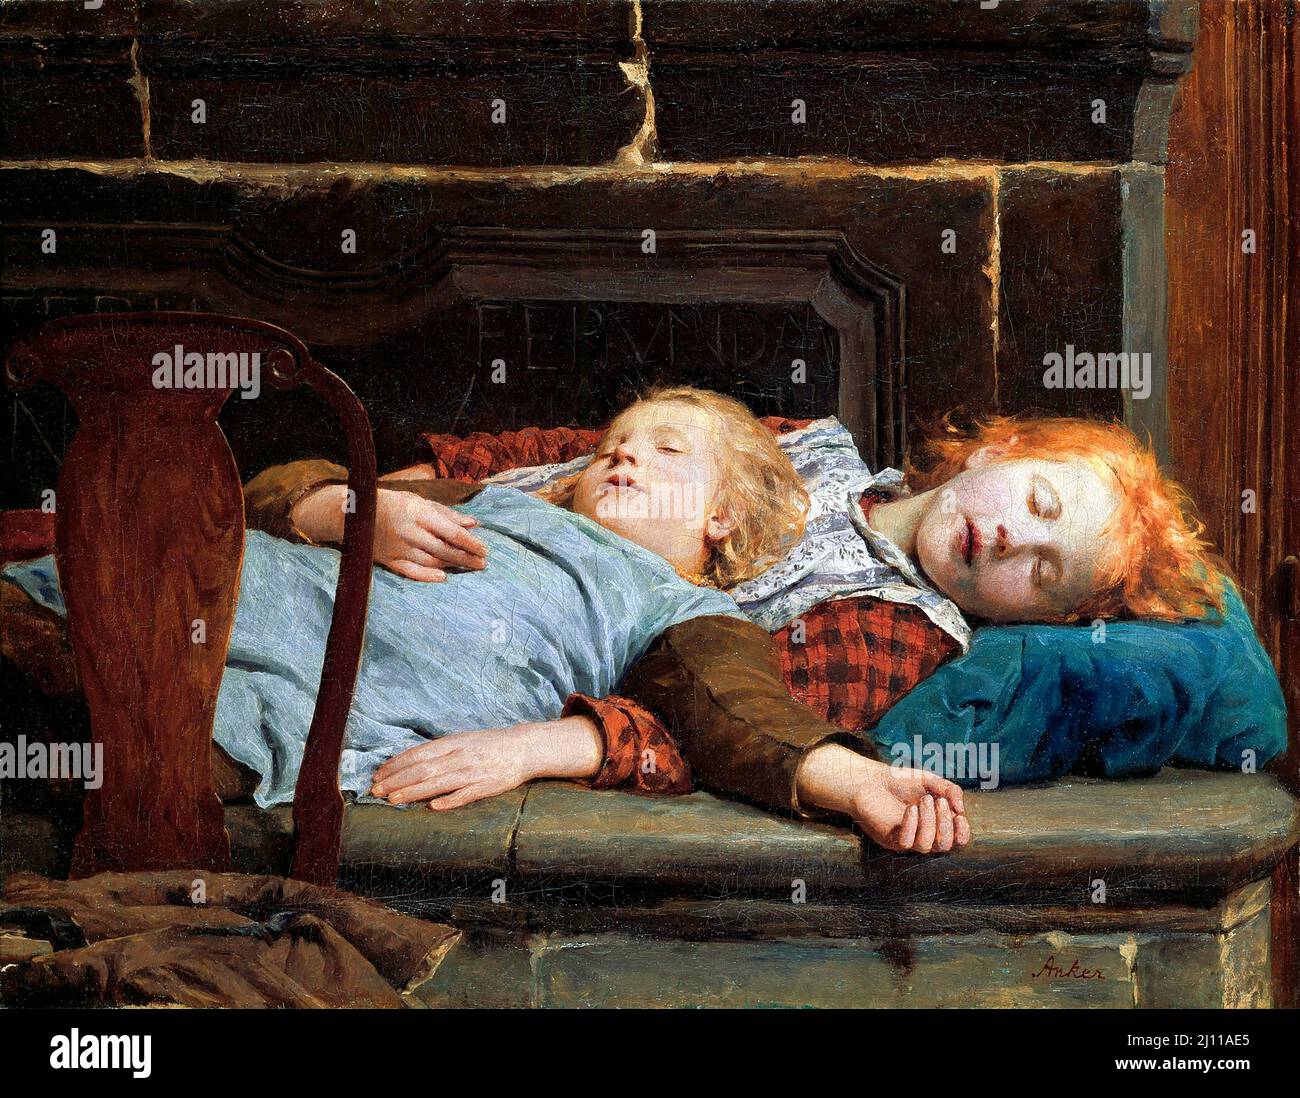 Due ragazze sulla panchina da stufa del pittore svizzero Albert Anker (1831-1910), olio su tela, 1895 Foto Stock